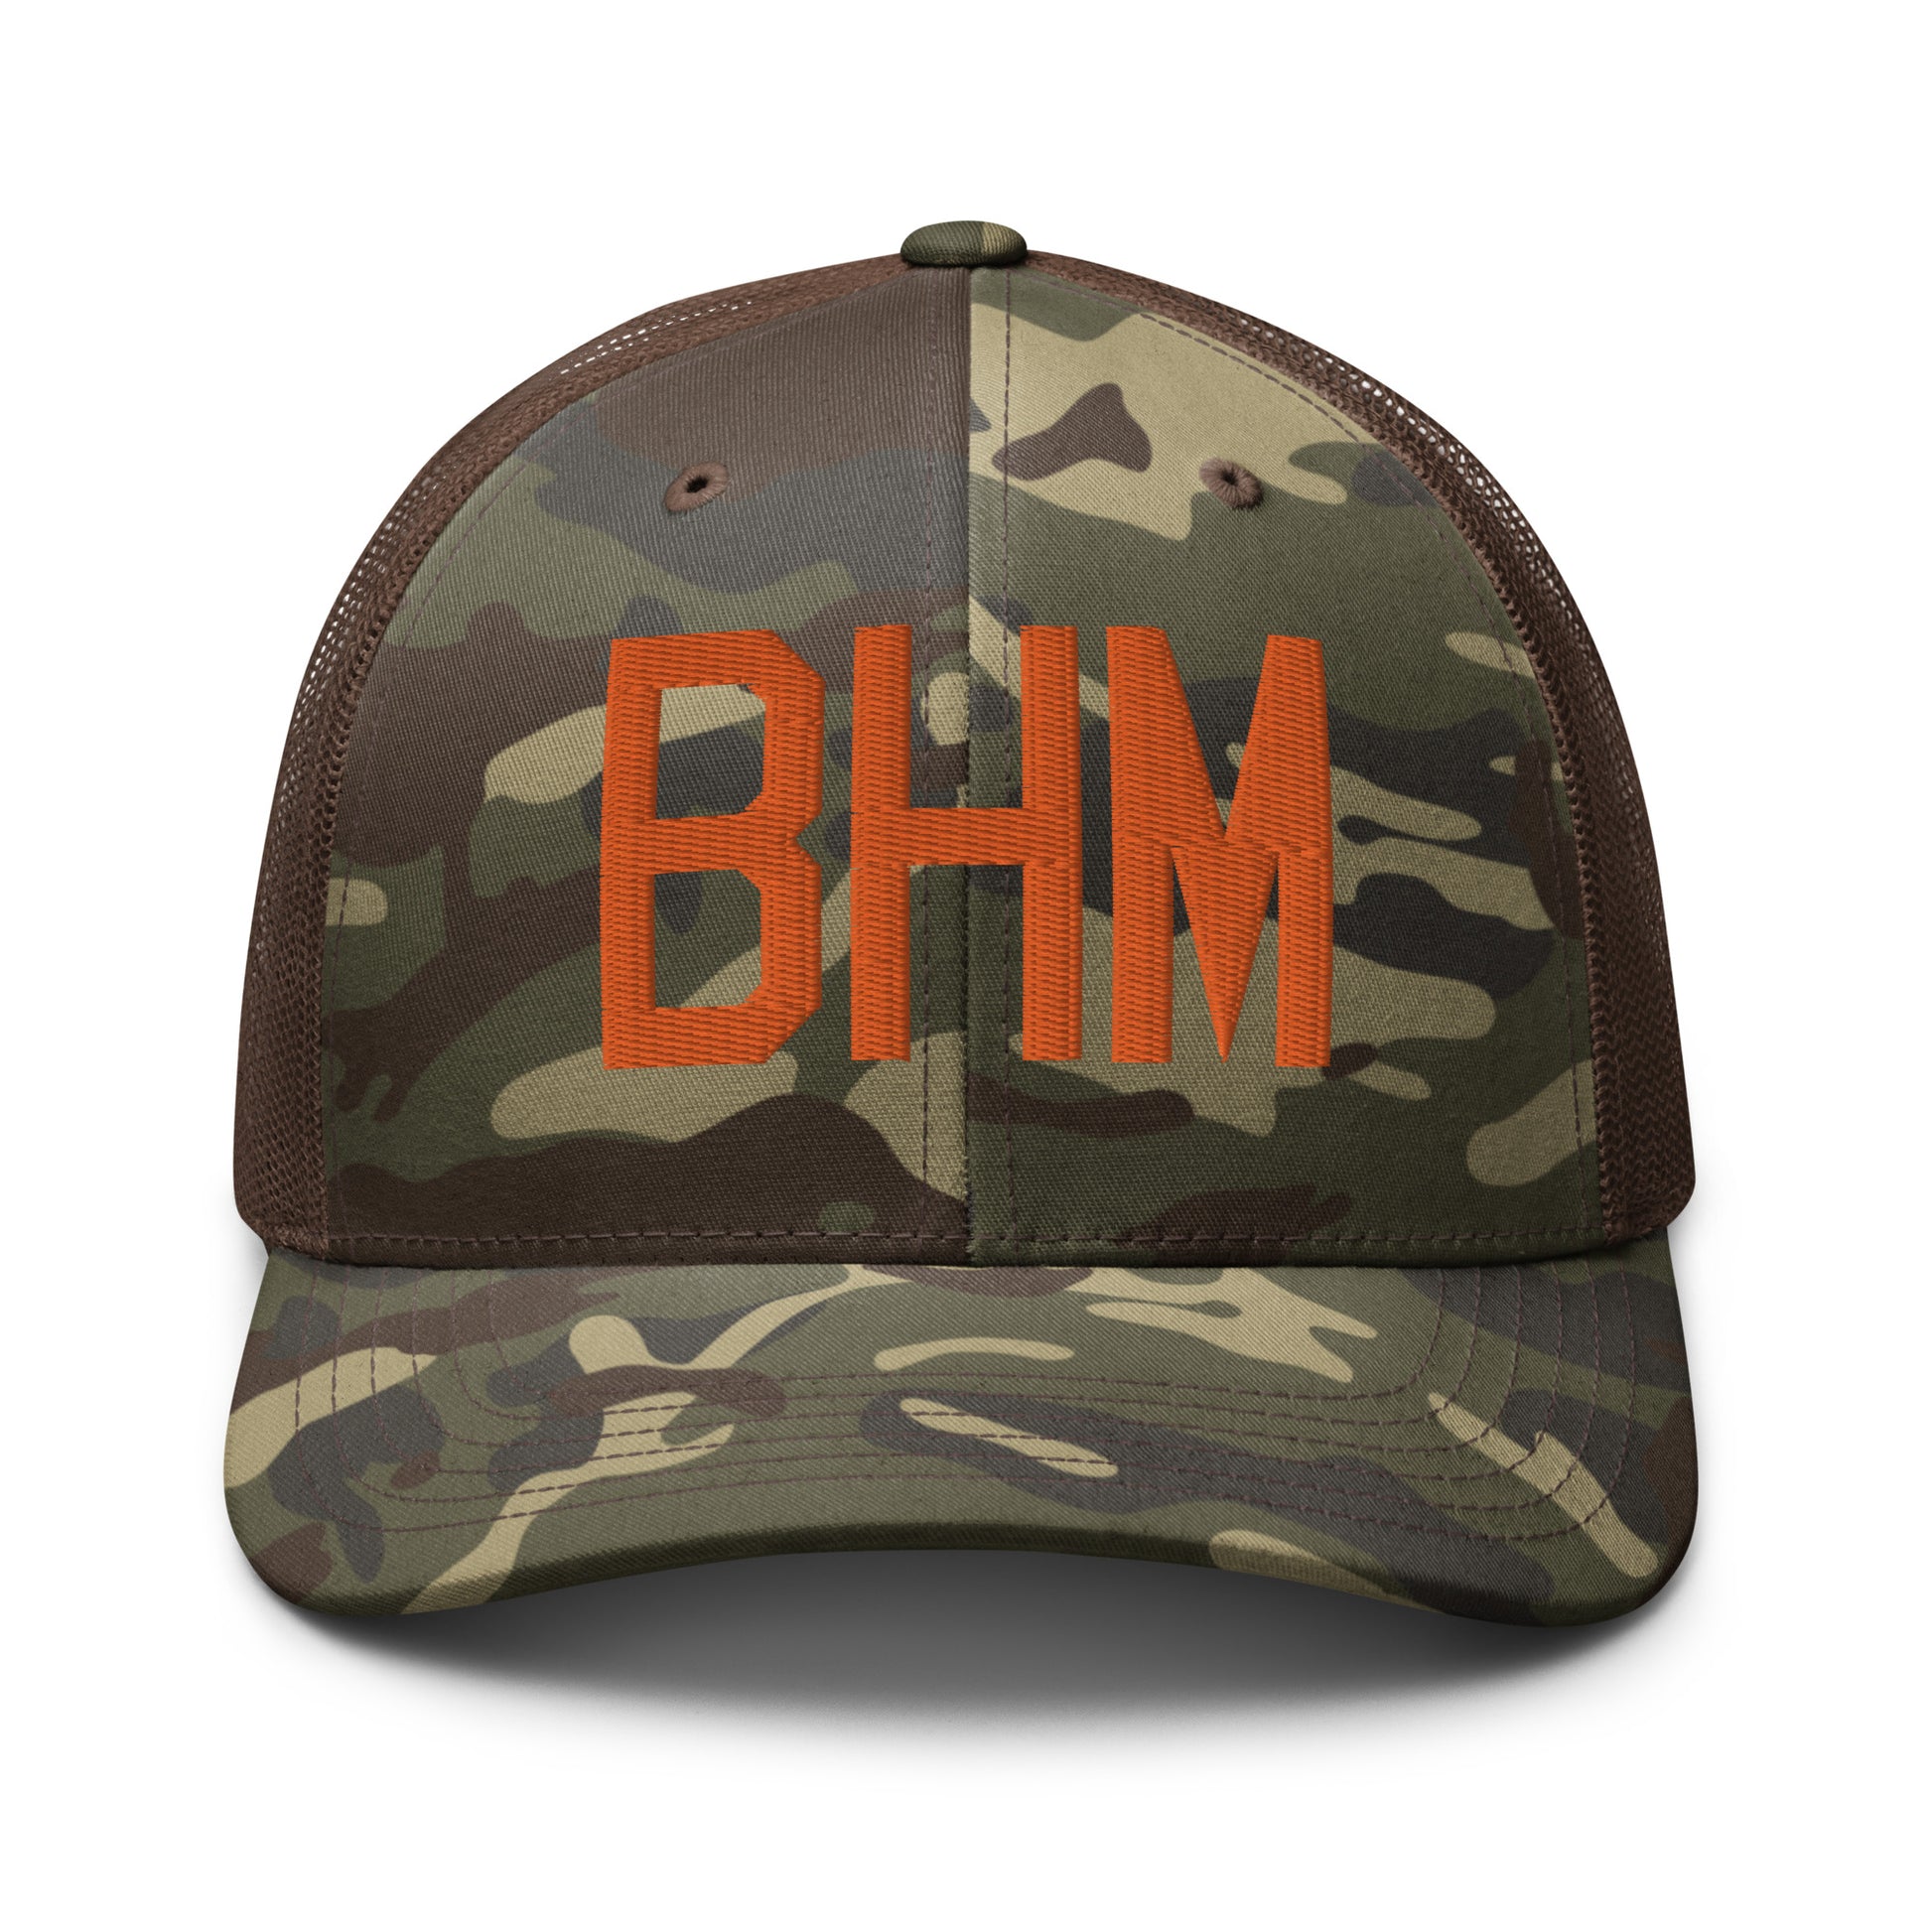 Airport Code Camouflage Trucker Hat - Orange • BHM Birmingham • YHM Designs - Image 13